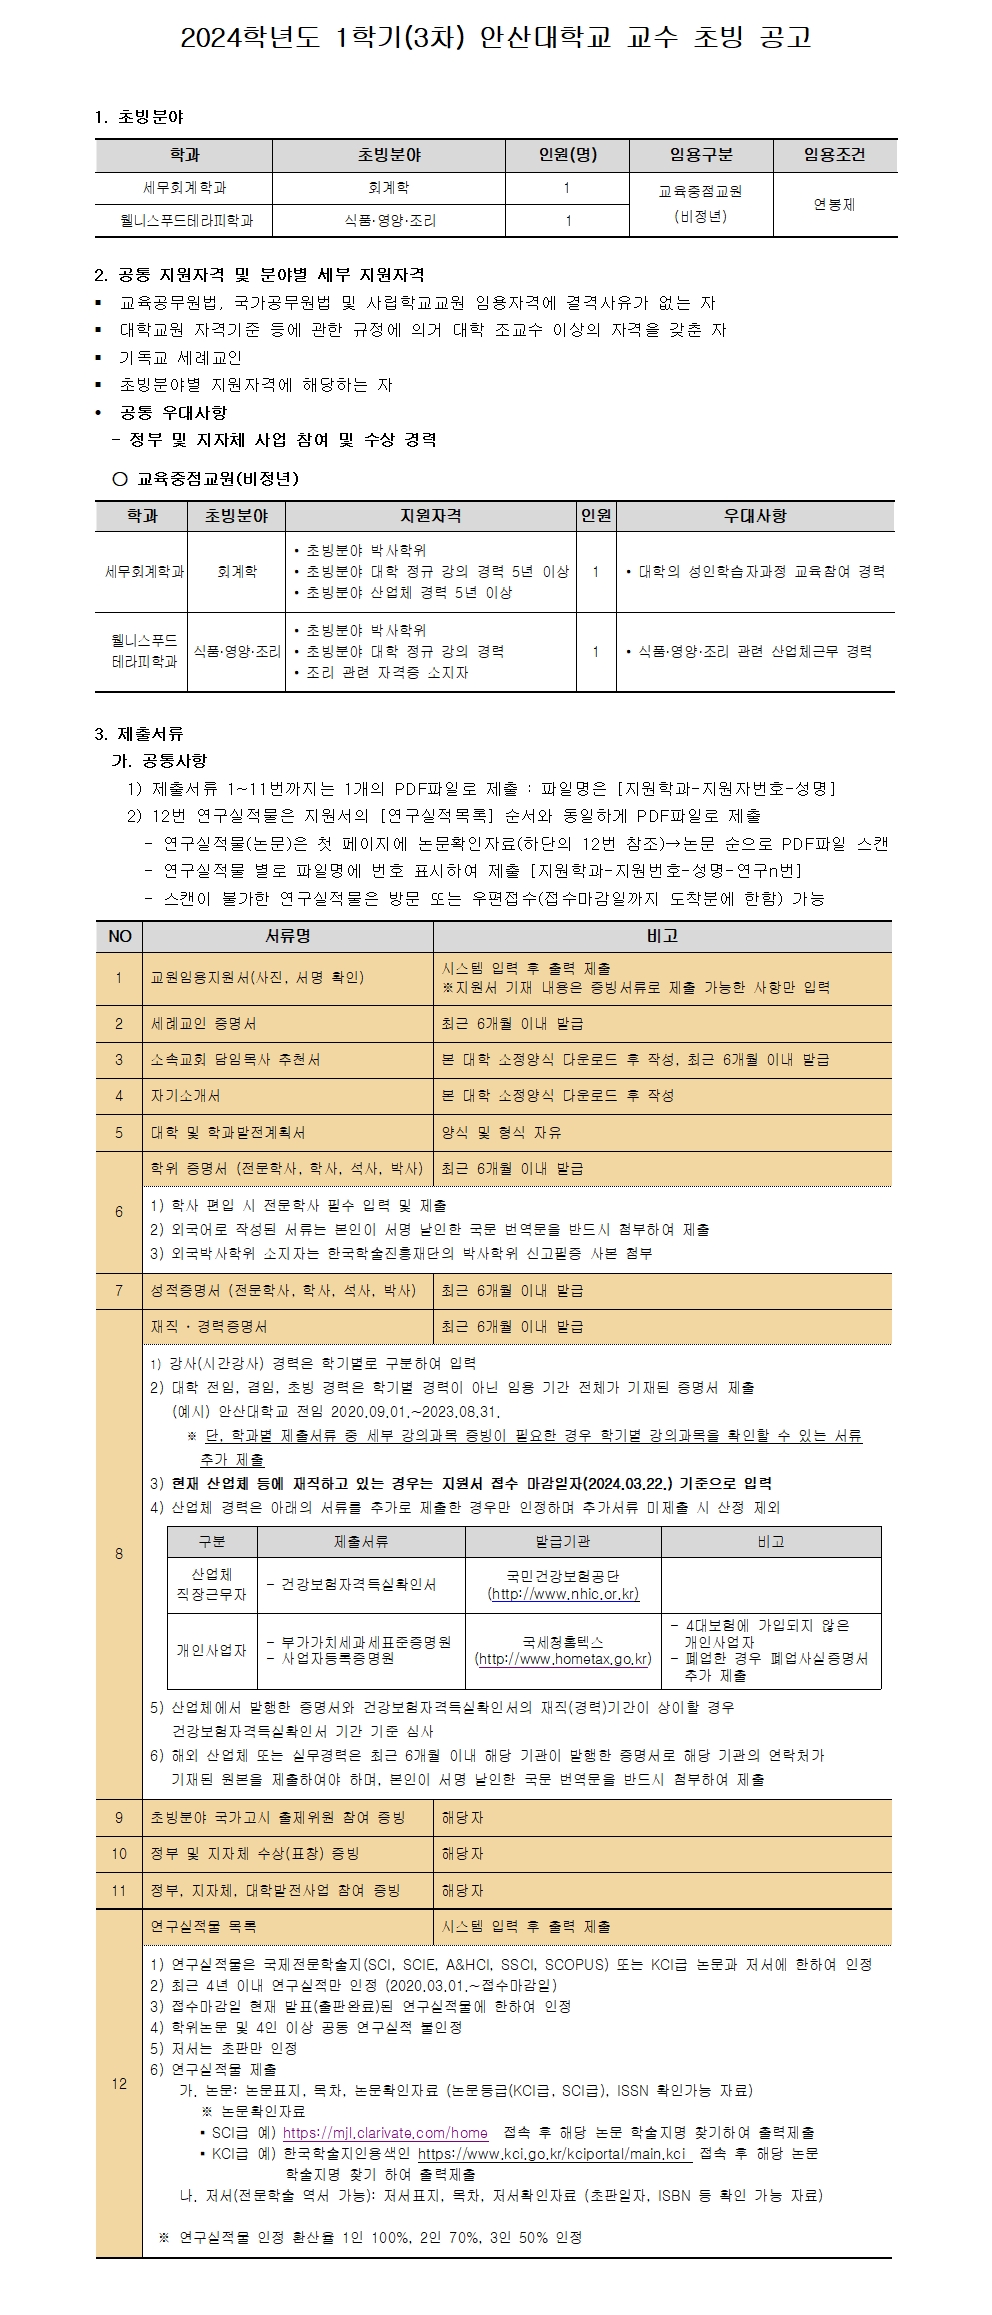 [안산대학교]2024-1학기(3차) 교수 충원_공고문 자세한 내용은 아래 설명글 참조